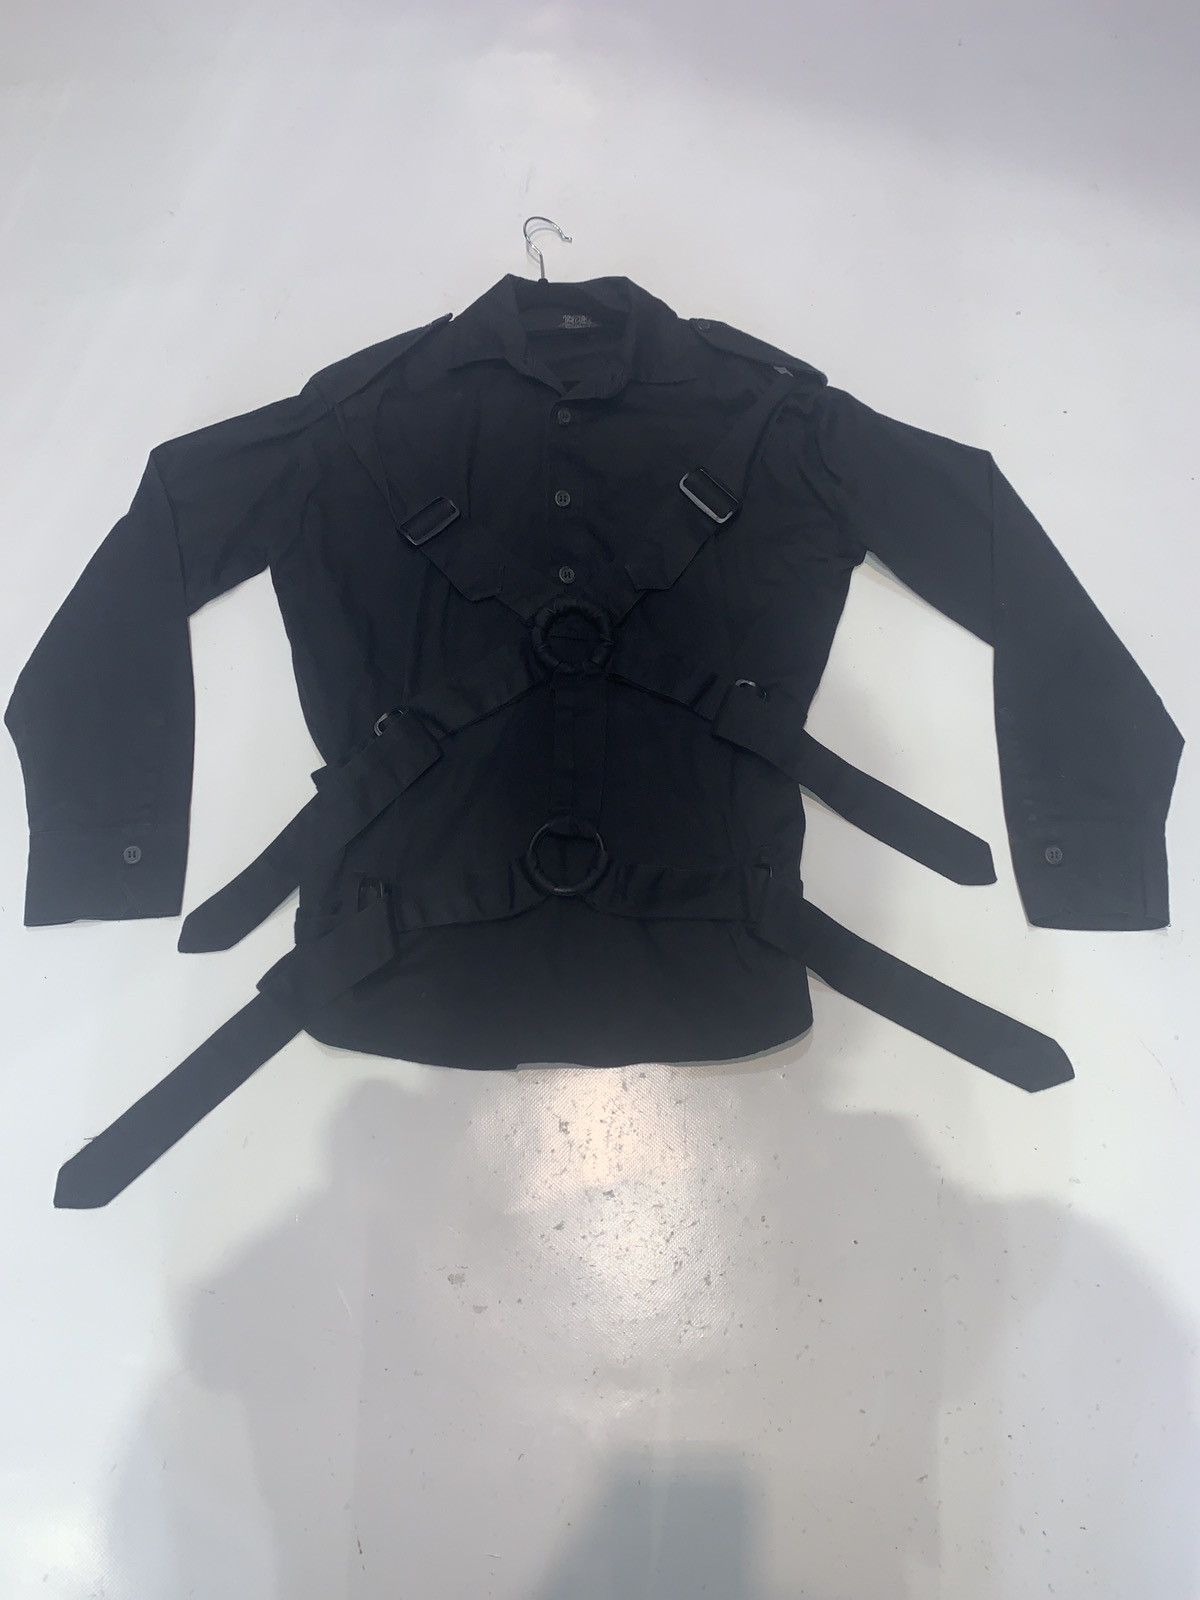 Vivienne Westwood Punk Black Cotton Bondage 'Parachute' Shirt